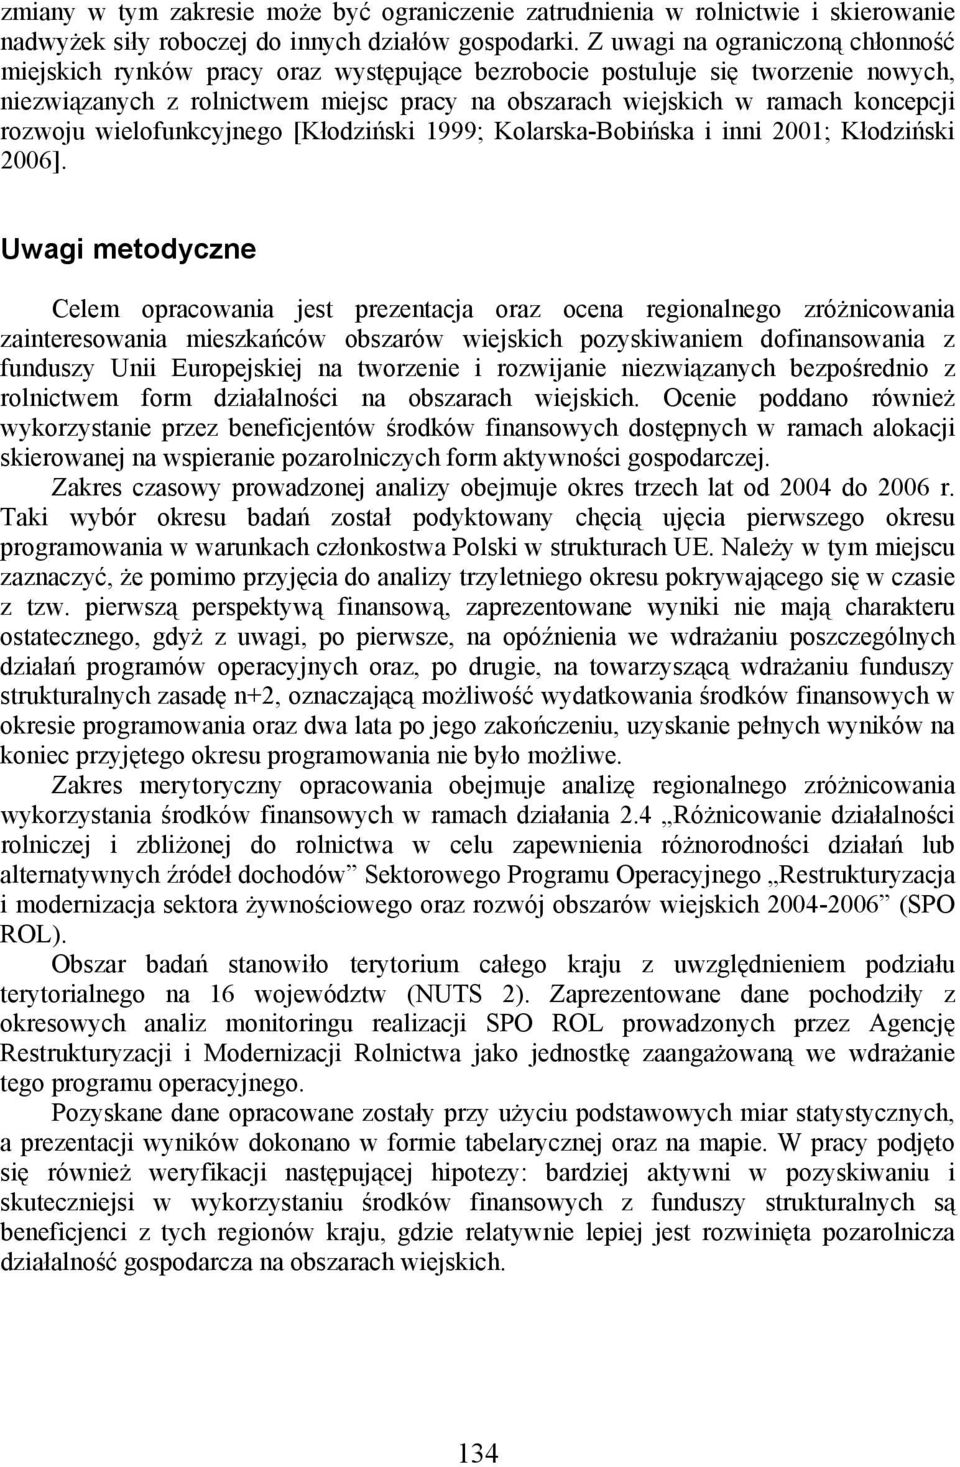 rozwoju wielofunkcyjnego [Kłodziński 1999; Kolarska-Bobińska i inni 2001; Kłodziński 2006].